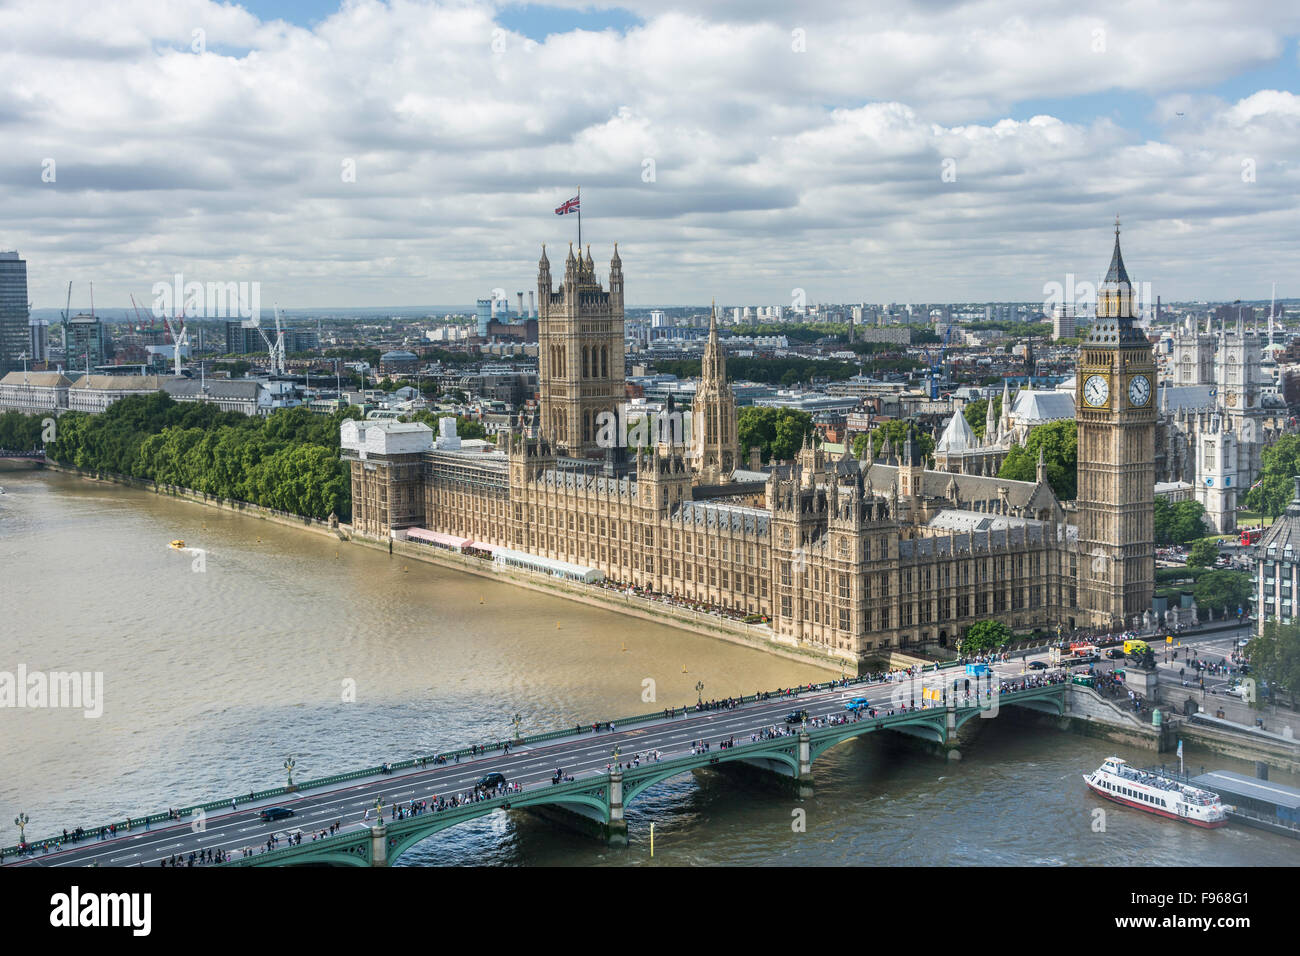 Ein Blick auf Big Ben und House of Parliament in London, England, getroffen von einer Kapsel aus dem London Eye Riesenrad Stockfoto